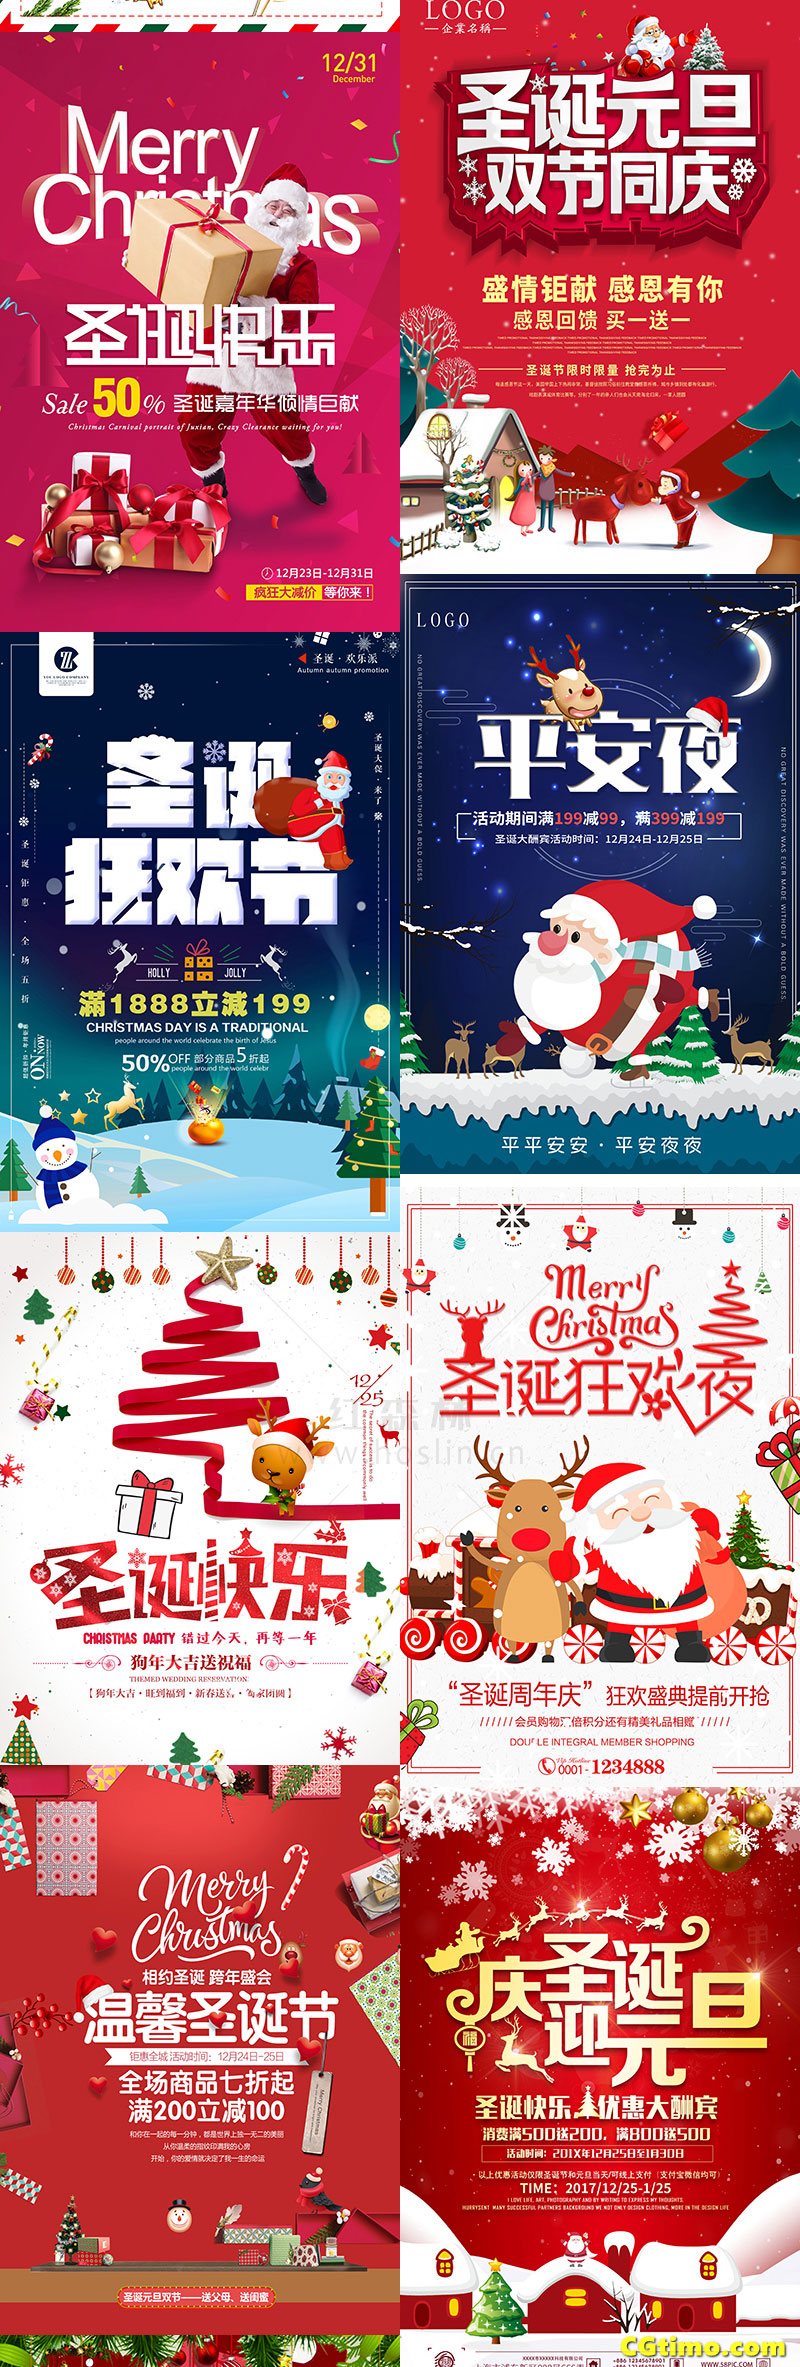 PSD素材-圣诞节日促销海报psd模板 PSD素材 第7张